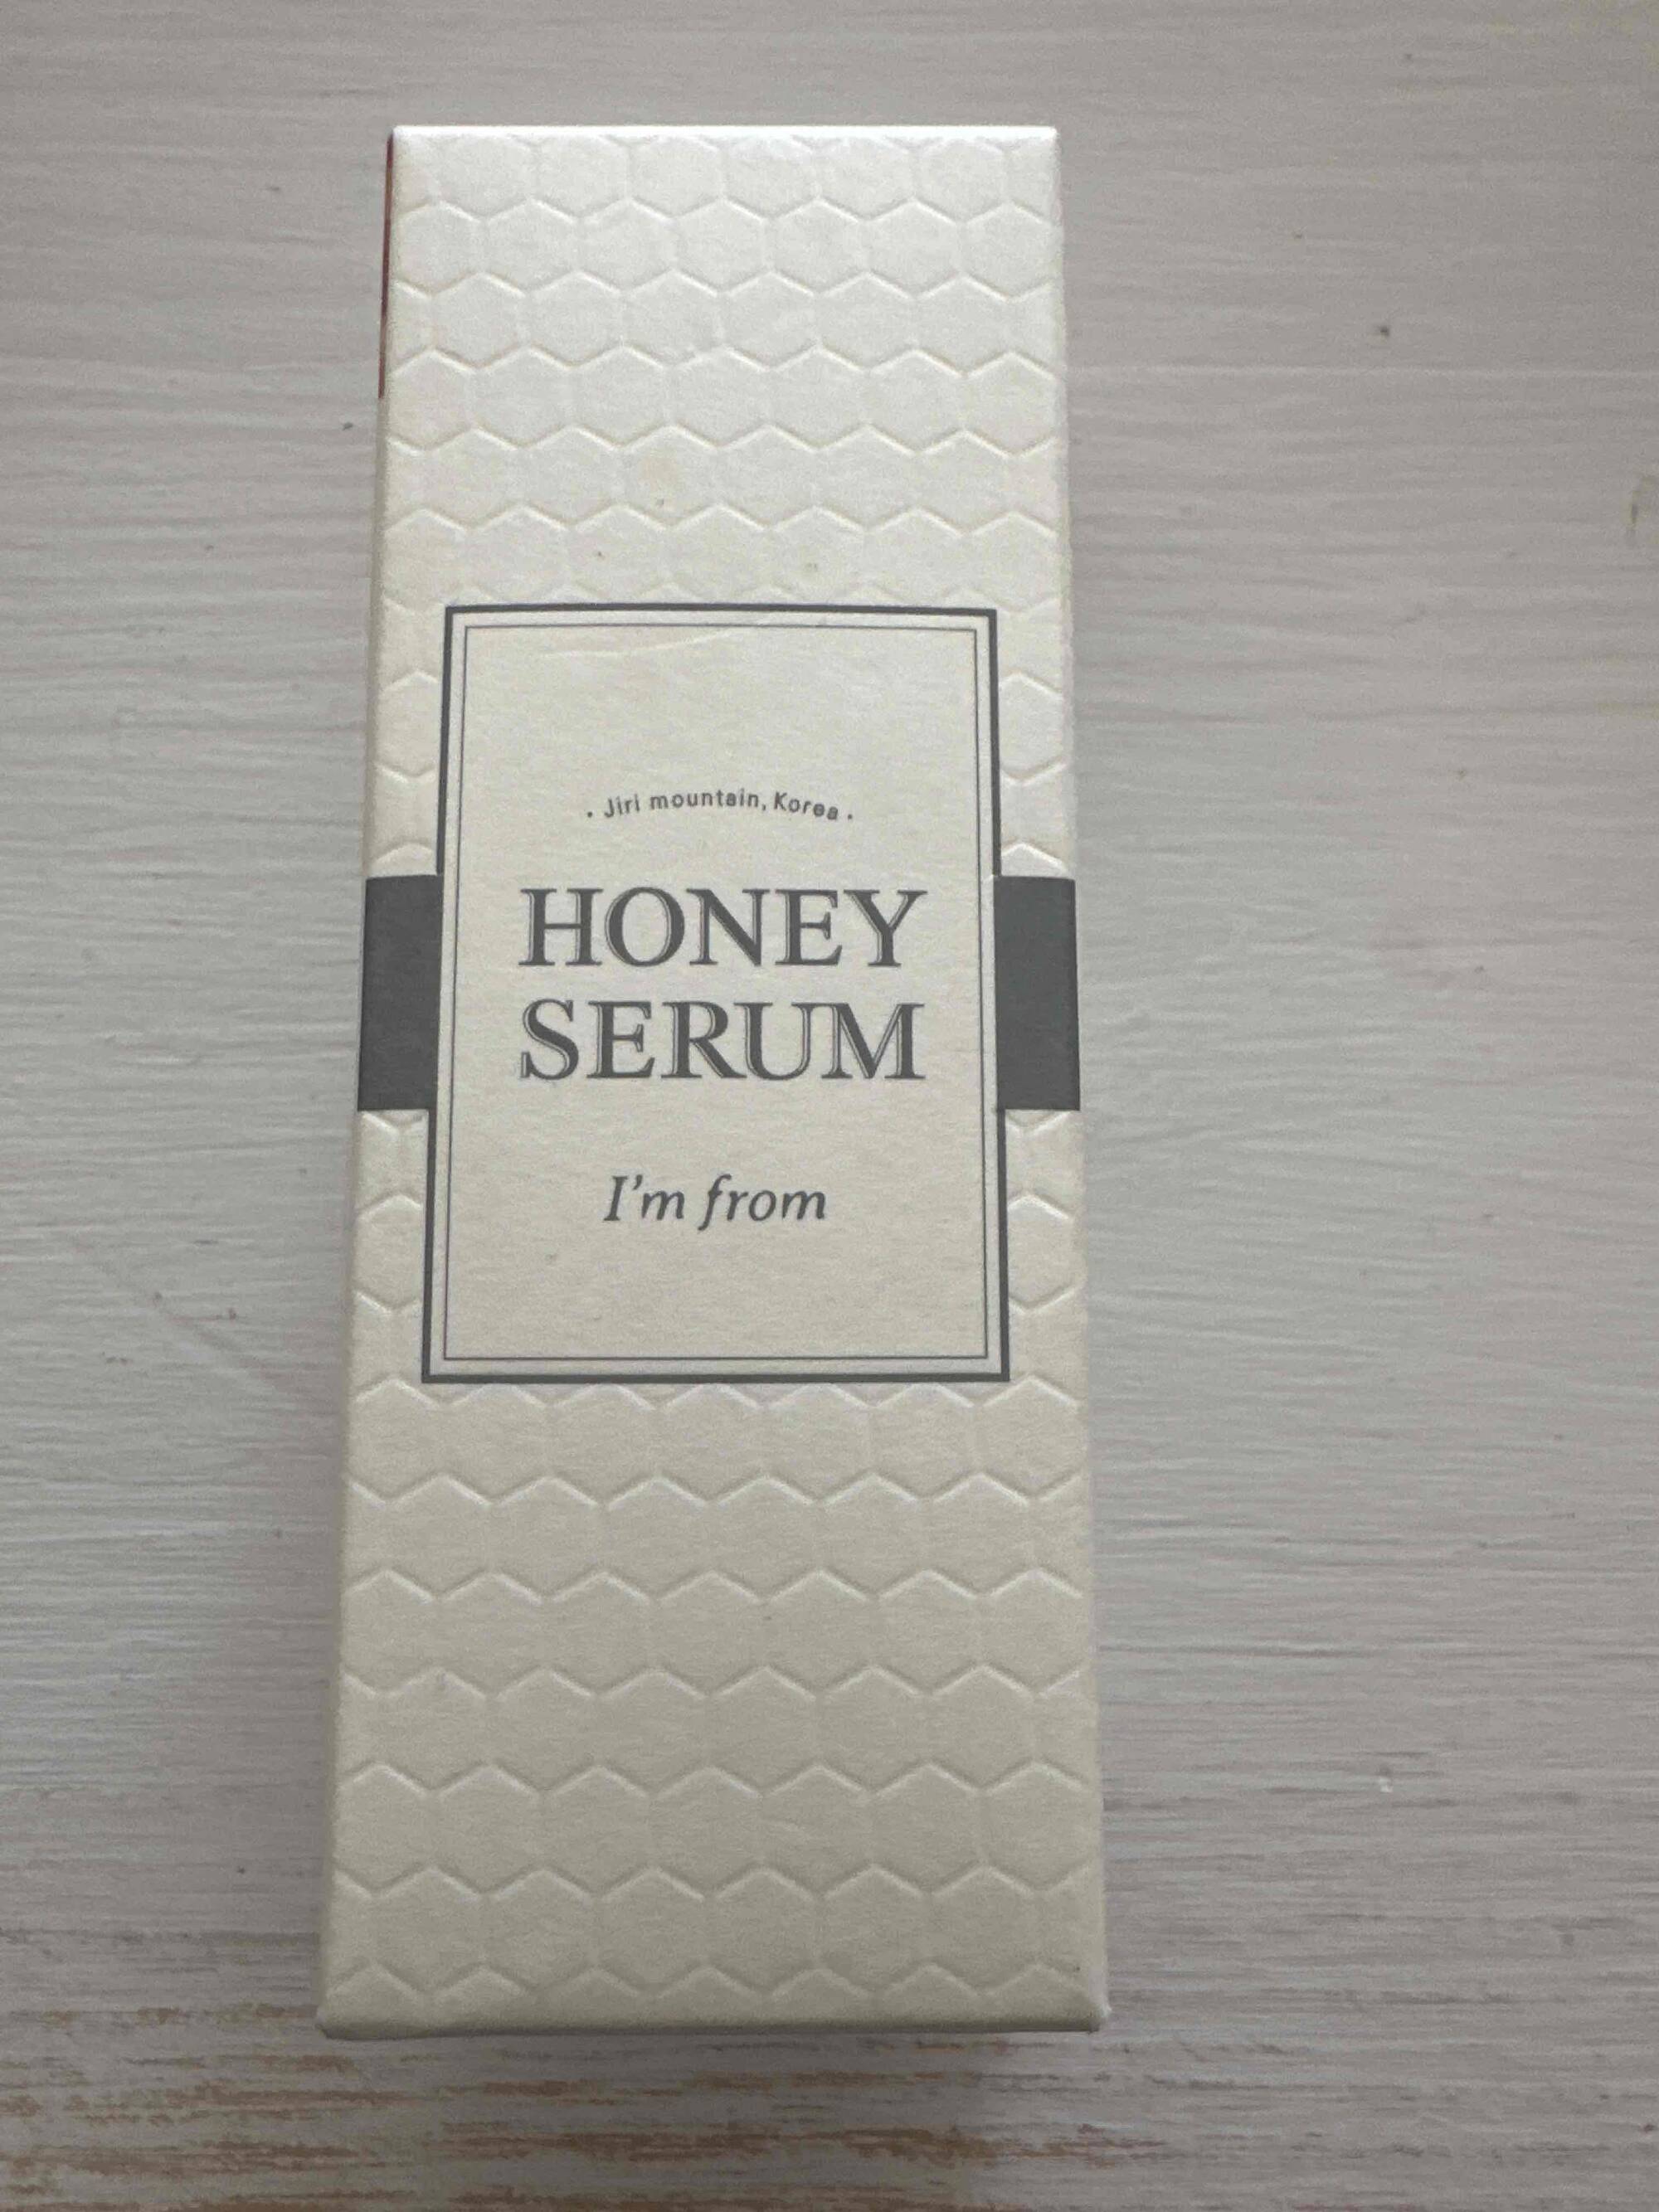 I'M FROM - Honey serum